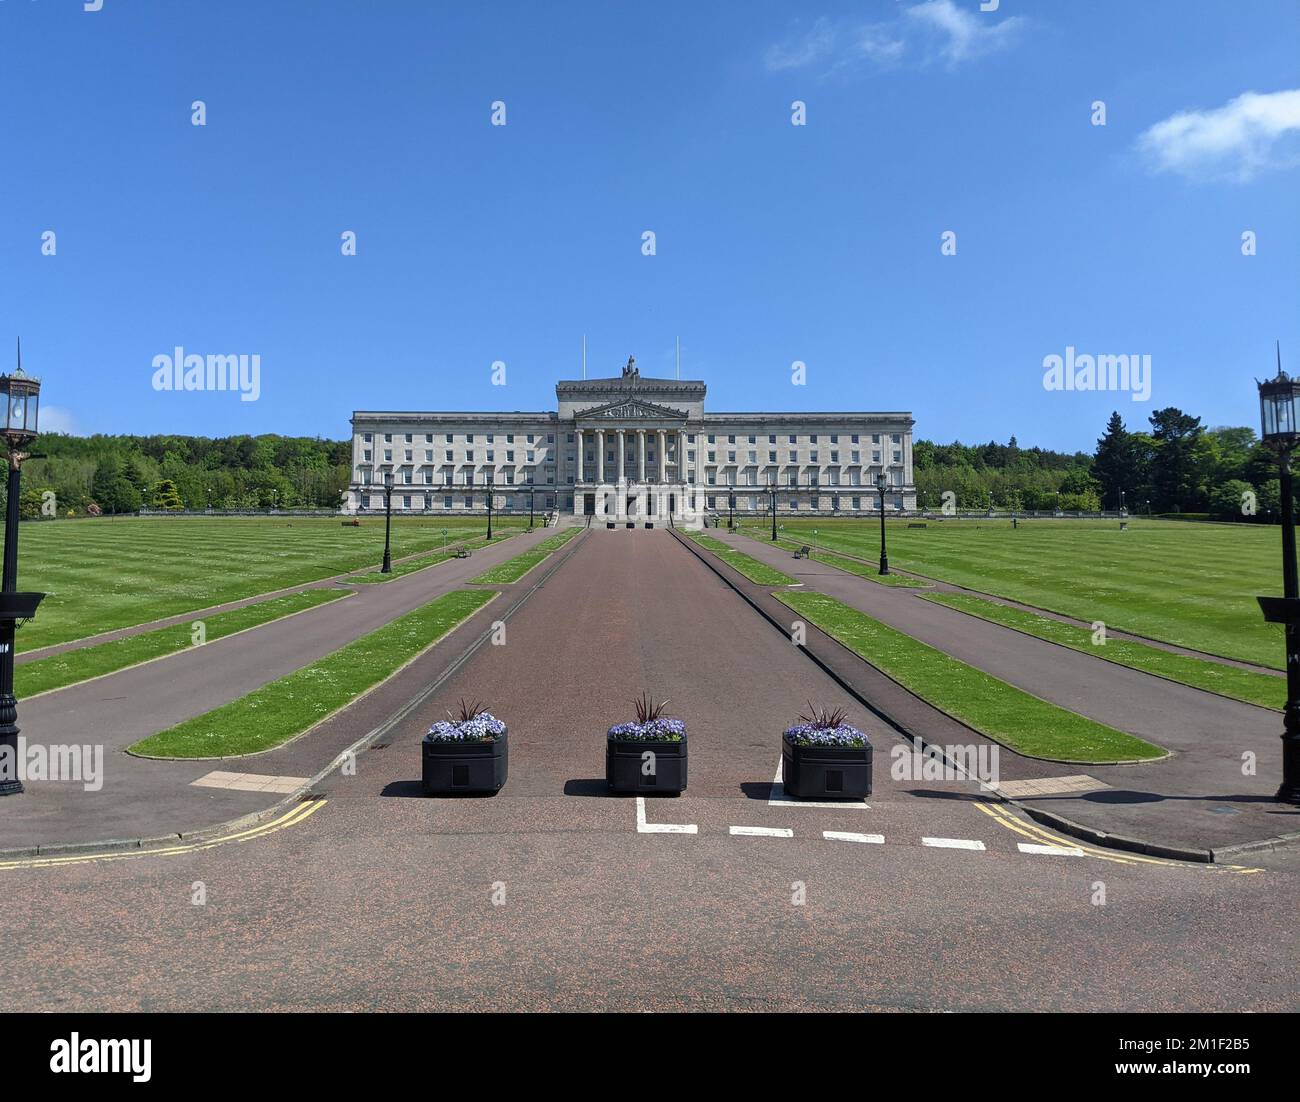 Edifici del Parlamento, spesso chiamati Stormont a causa della sua posizione nella zona Stormont Estate di Belfast, Irlanda del Nord. Foto Stock